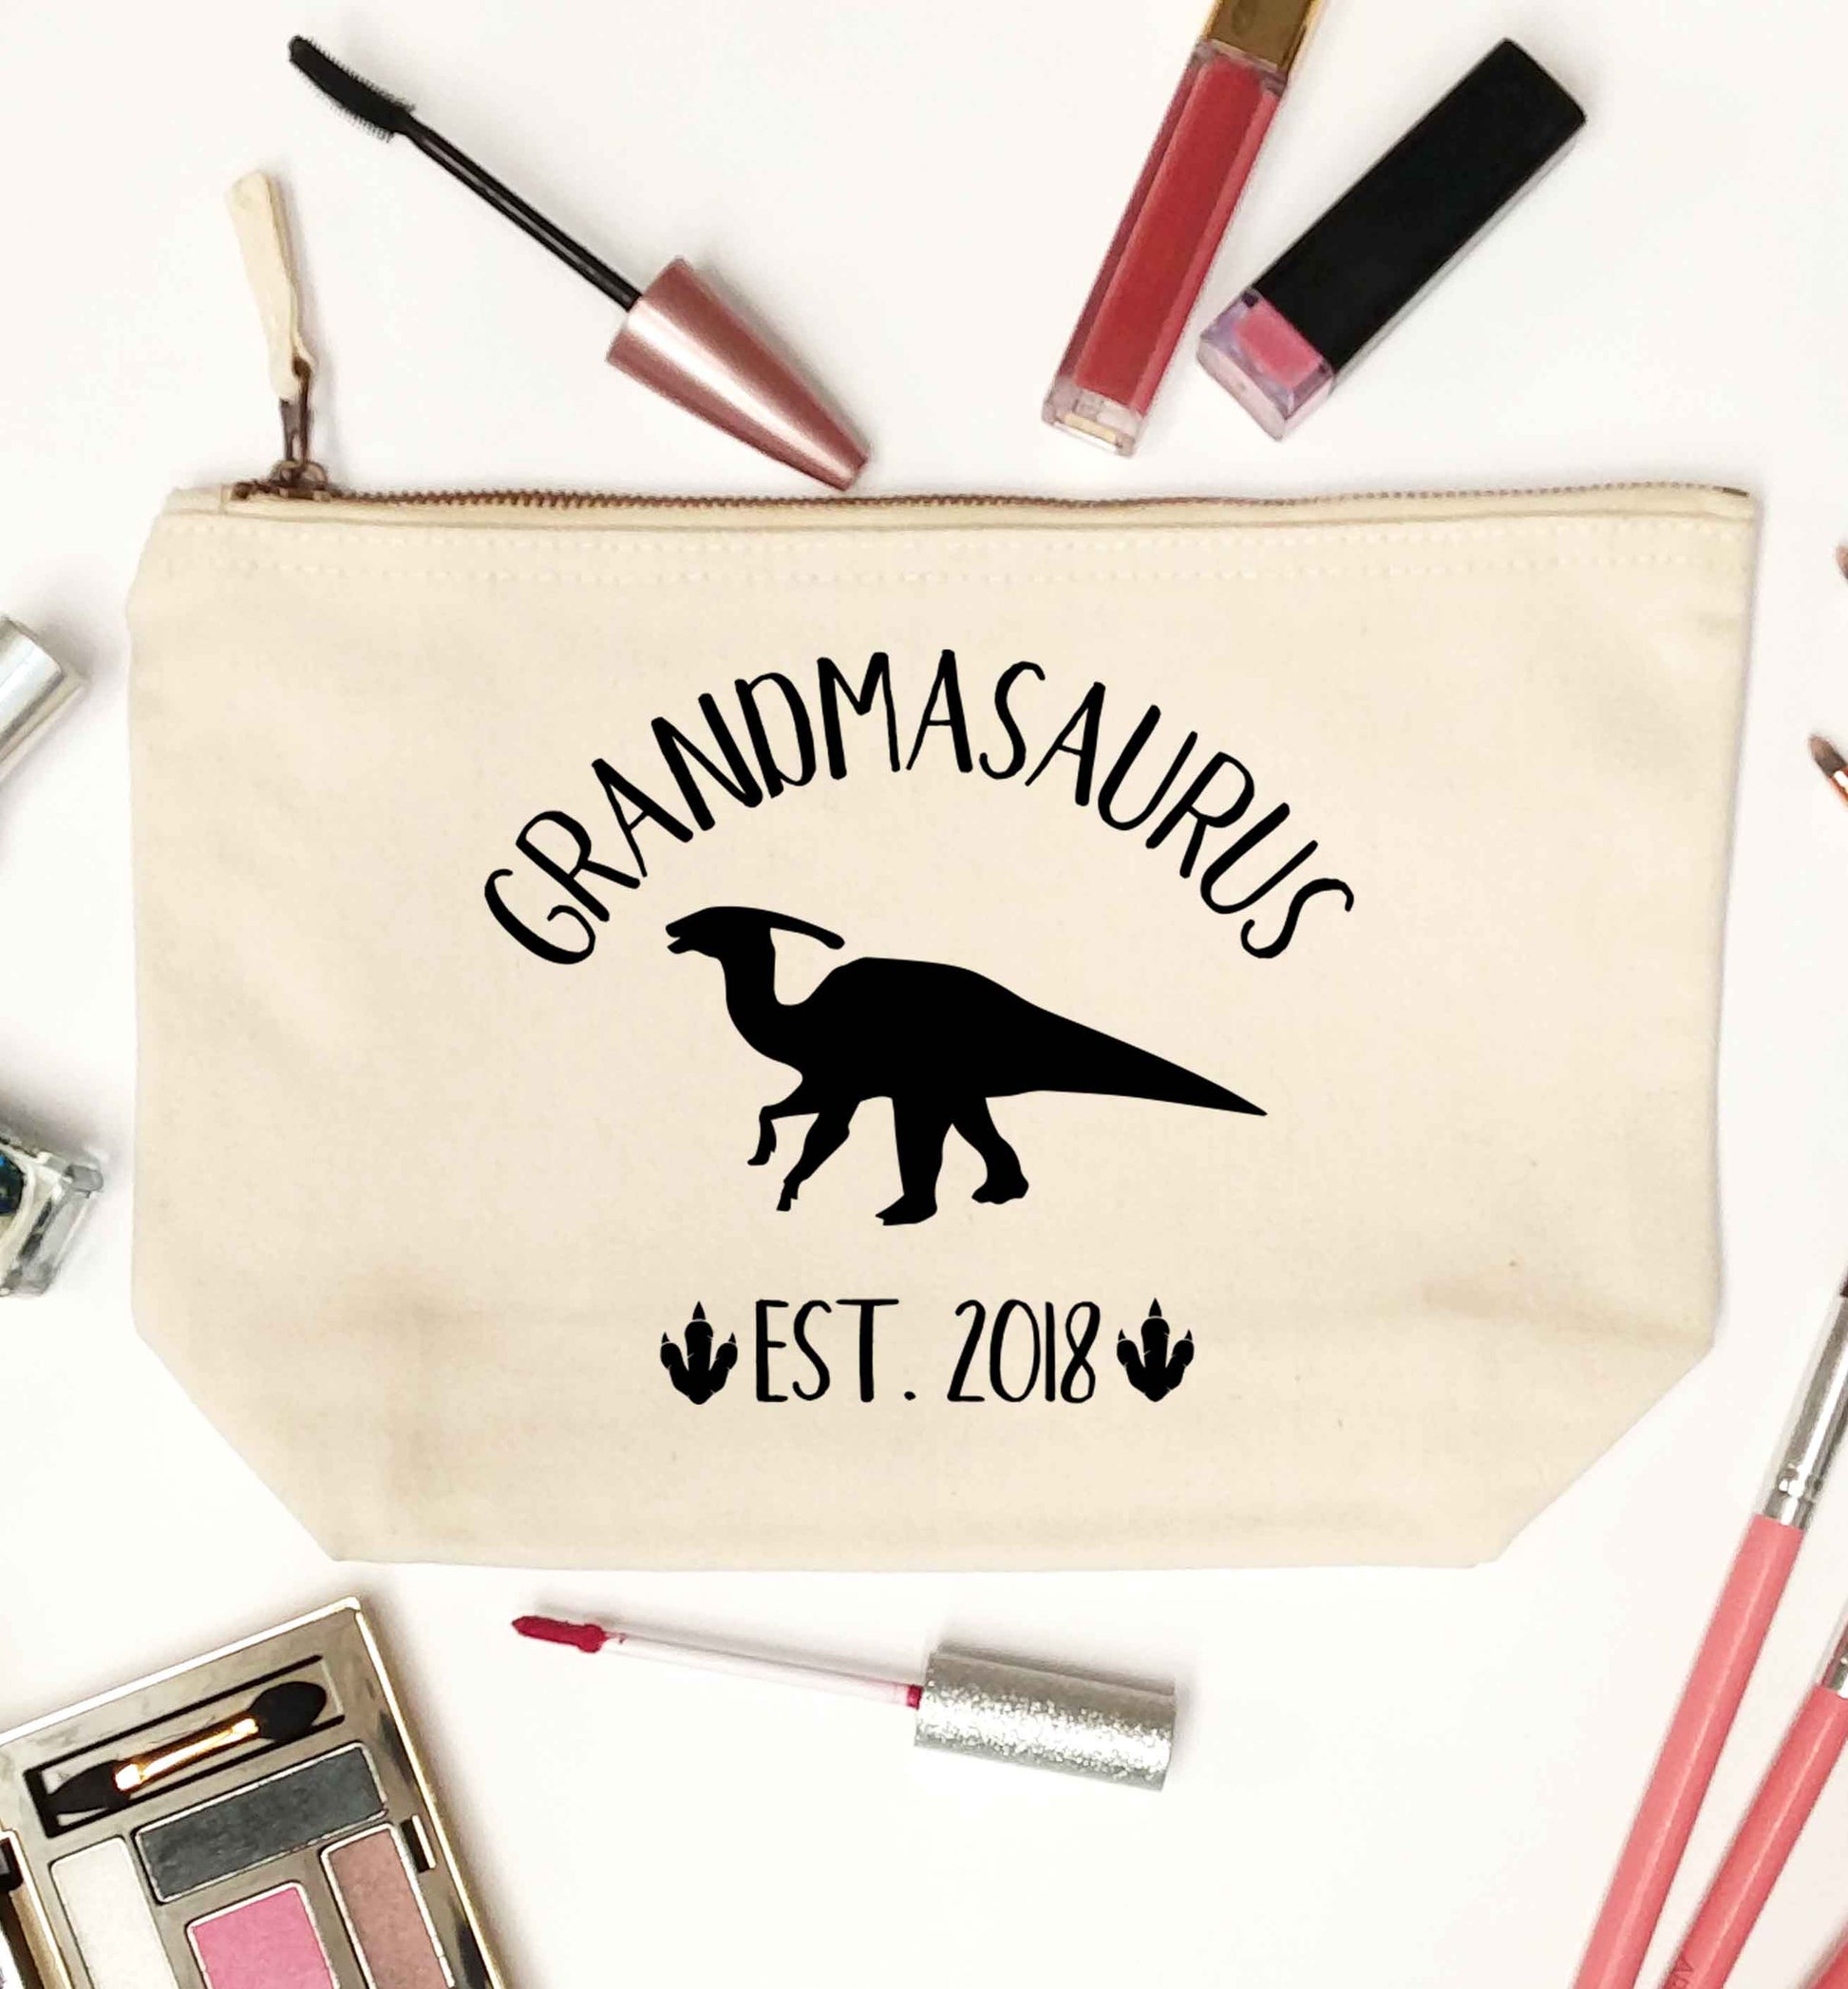 Personalised grandmasaurus since (custom date) natural makeup bag